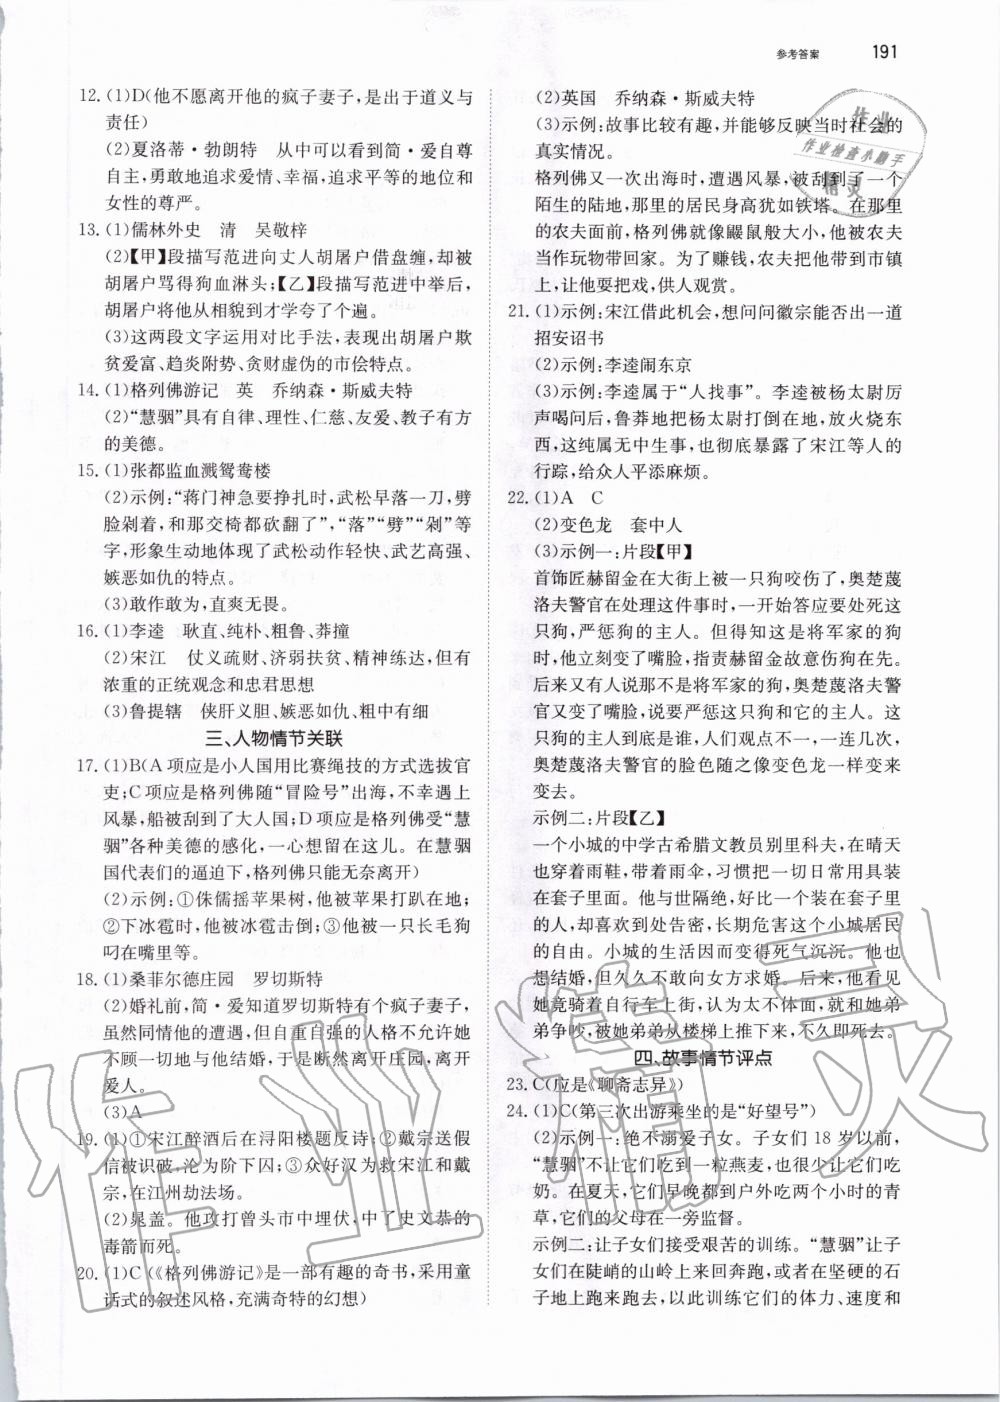 2019年锐阅读初中语文阅读训练5合1中考 第37页